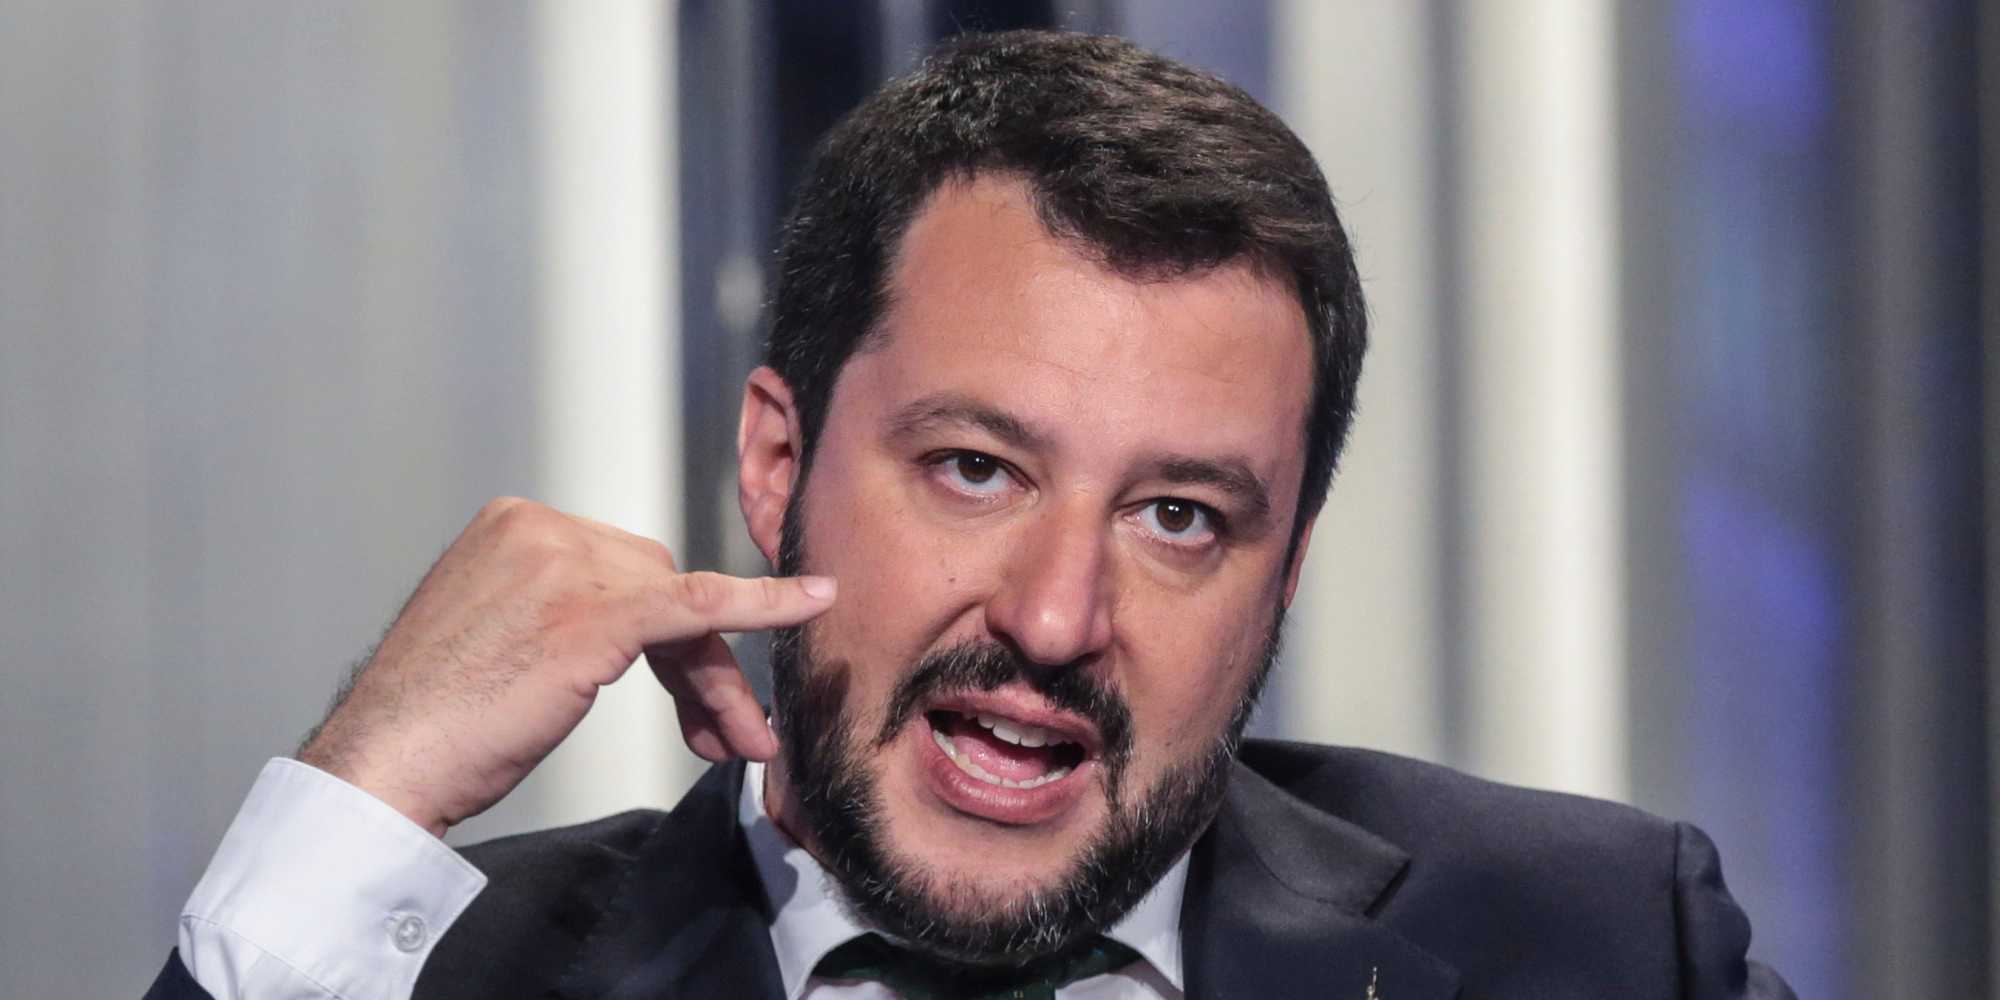 Espulsione tunisino Ravenna, Matteo Salvini: "Stop all'invasione"